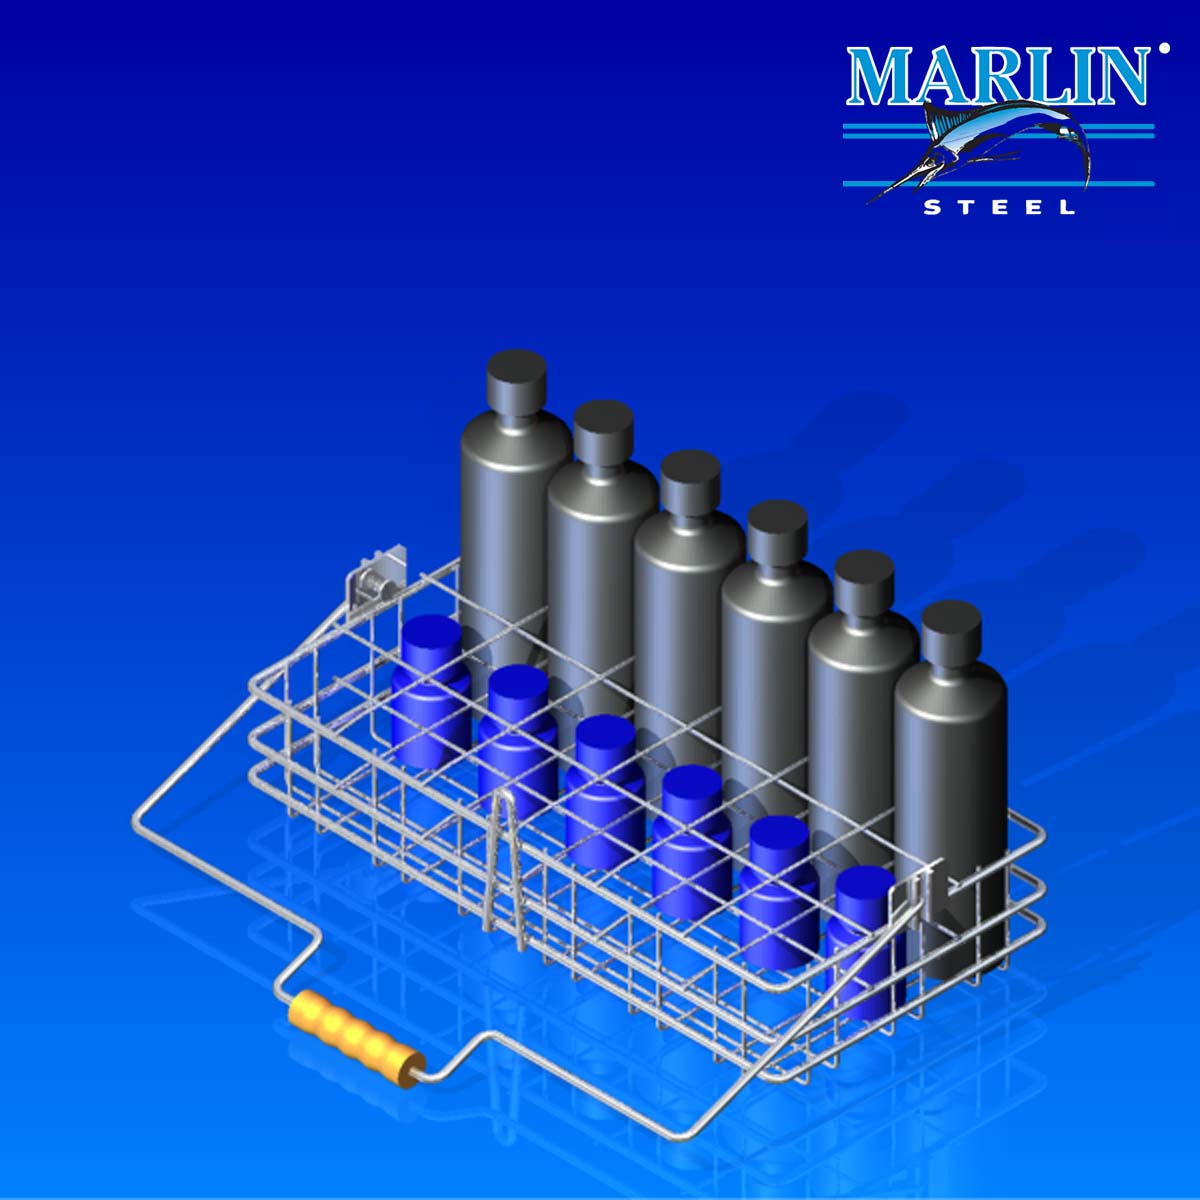 Marlin Steel Material Handling Basket 841001